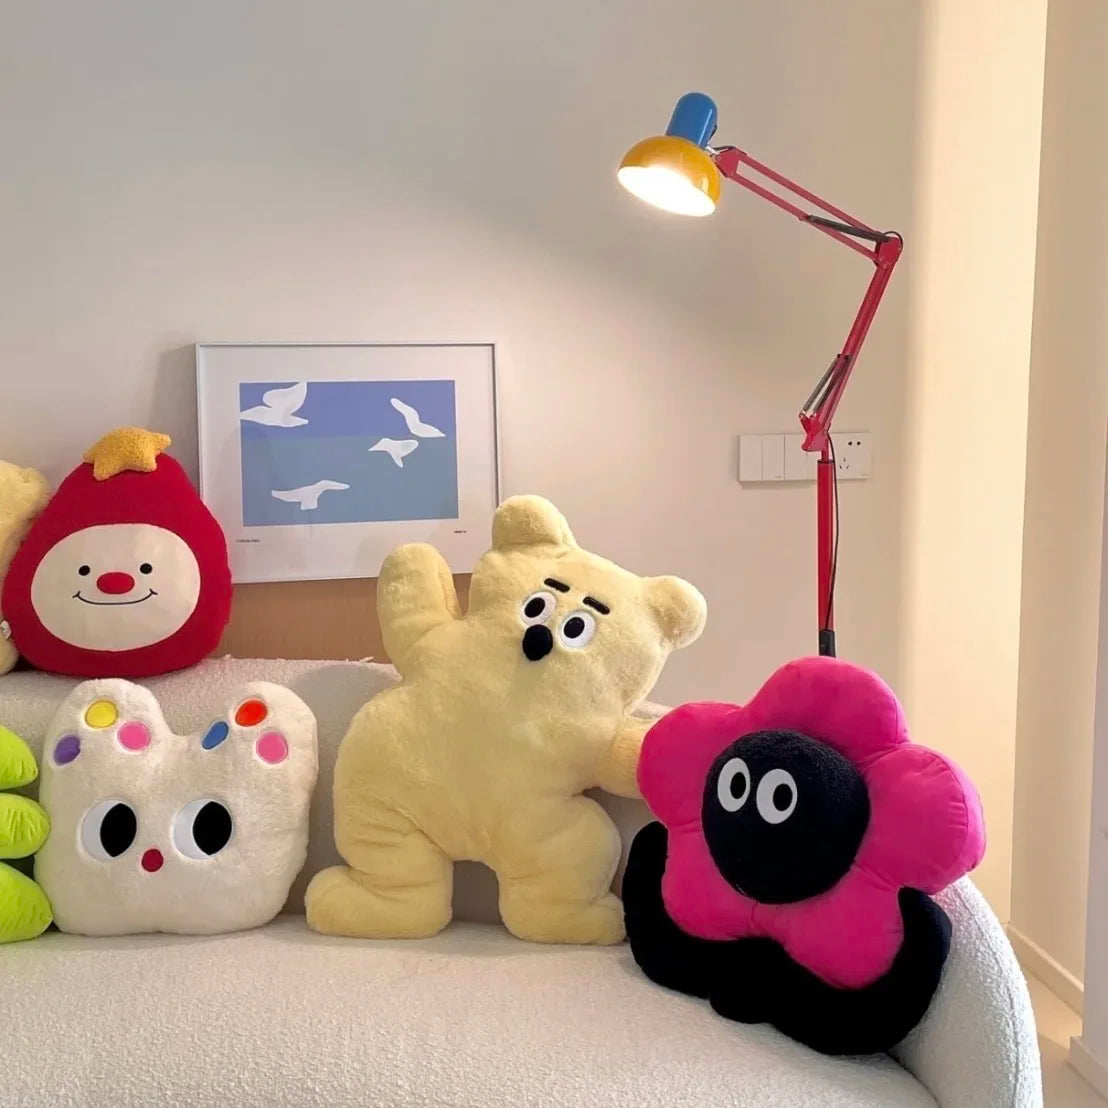 Girly Flower Pillow - Celebrity Sofa Decor Plush Toy | Stuffed Animals & Plushies | Adorbs Plushies